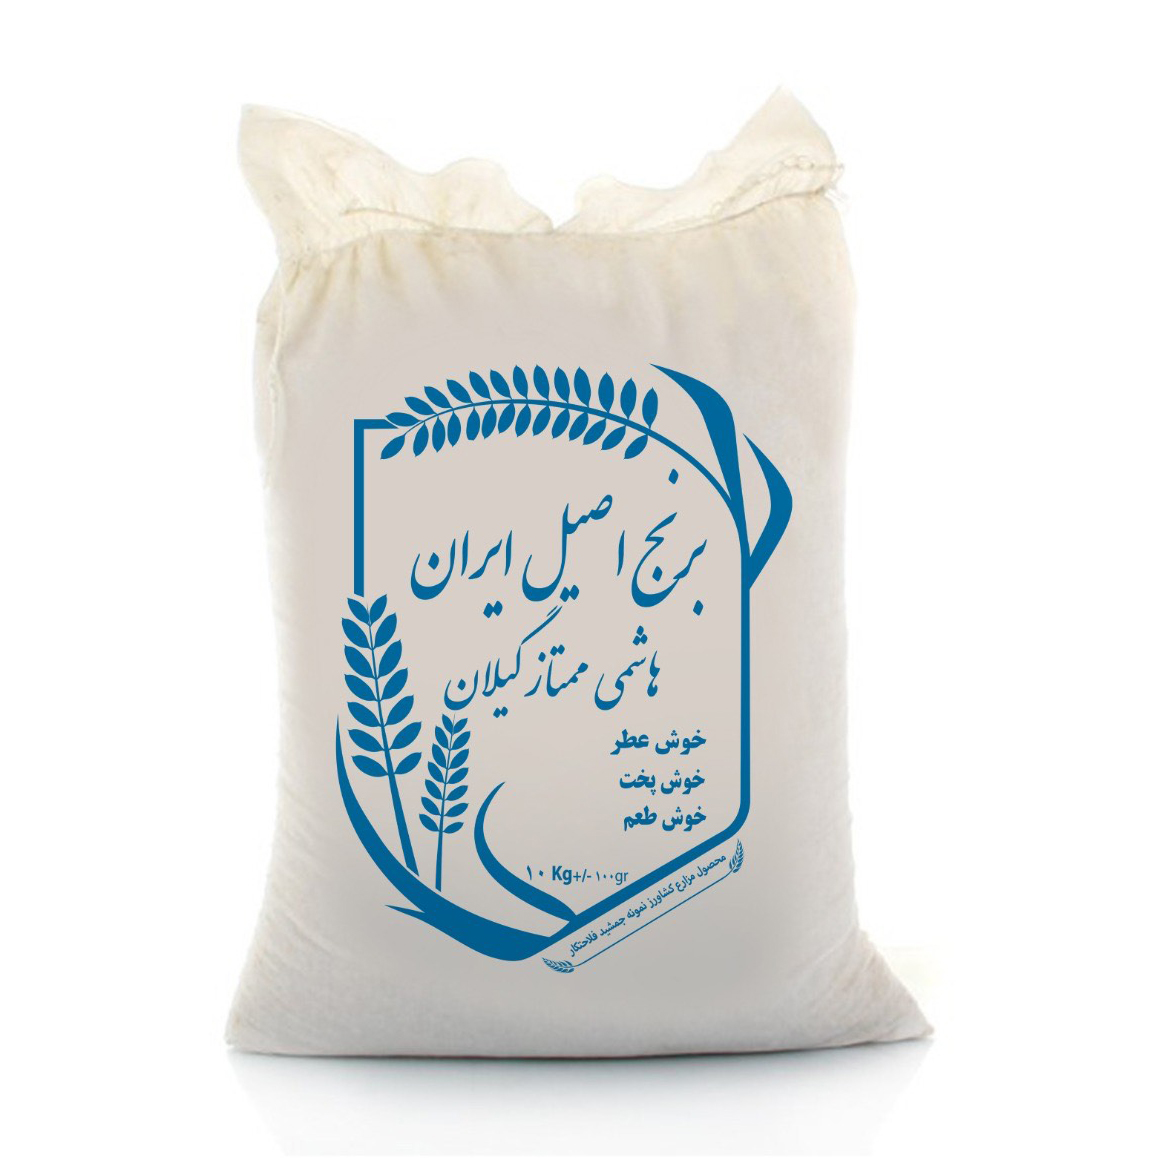 نکته خرید - قیمت روز برنج ایرانی اصیل هاشمی ممتاز برنج اصیل ایران - 10000 گرم خرید